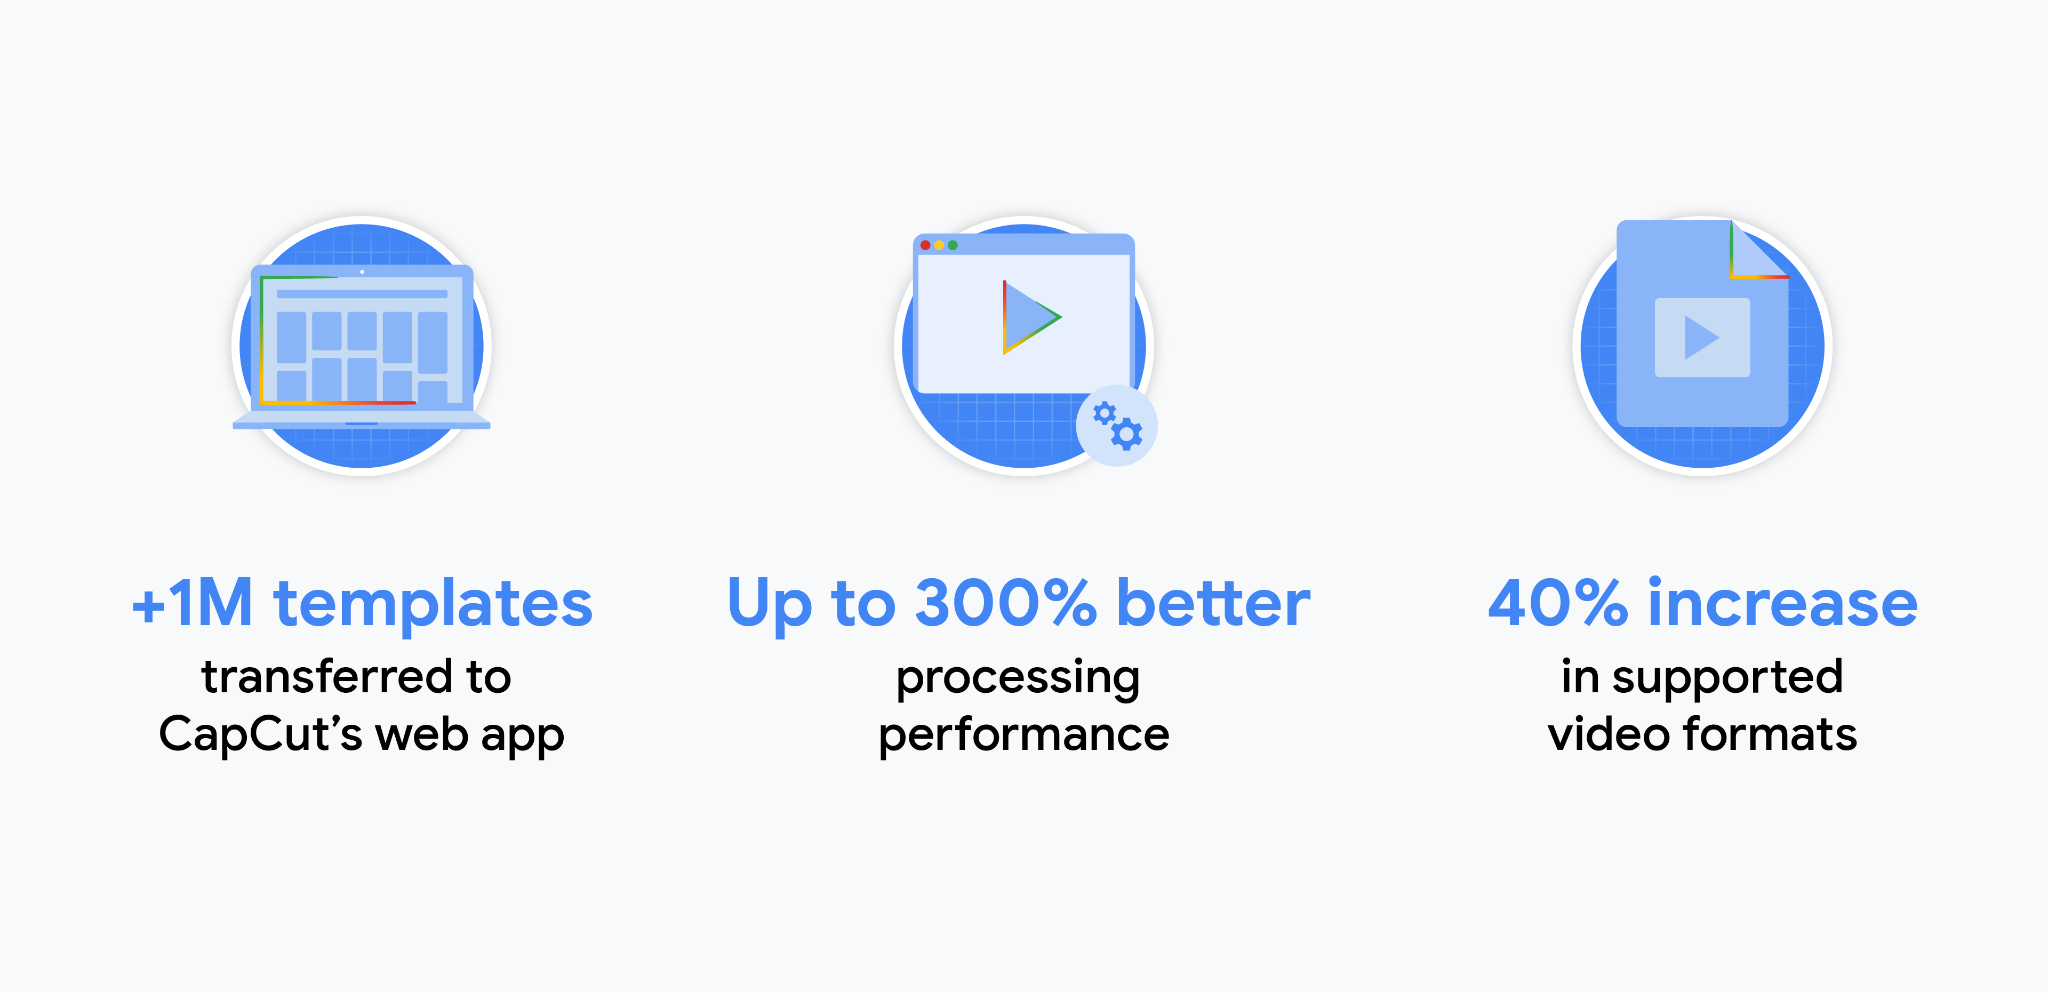 CapCut 應用程式相關統計資料：將超過一百萬份範本轉移至 CapCut 網頁應用程式。處理效能提升多達 300%。支援的影片格式增加 40%。